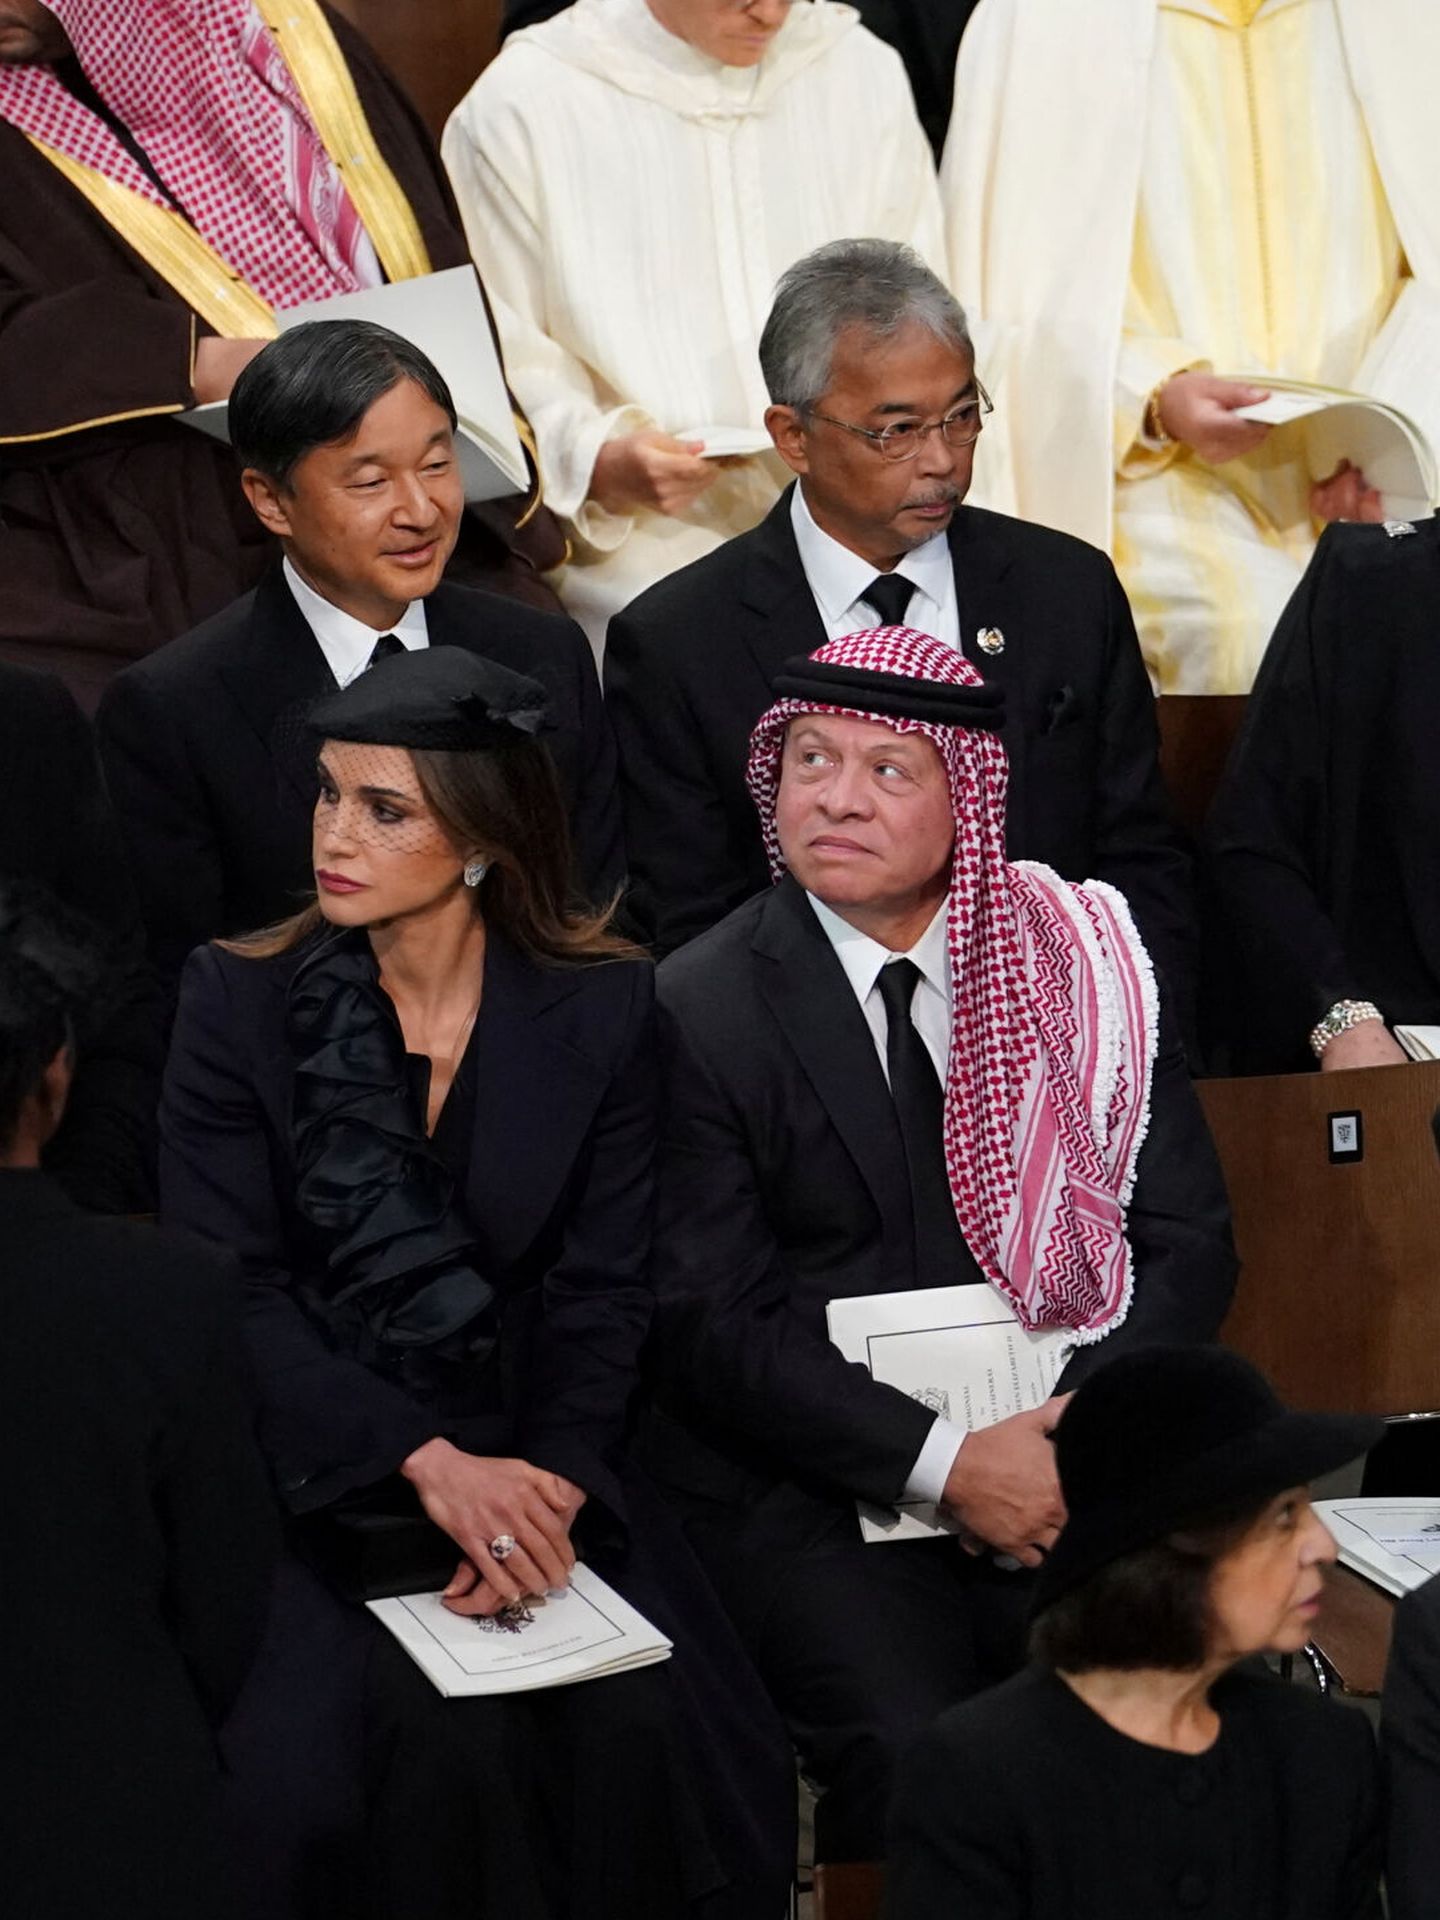 Rania de Jordania, junto al rey Abdalá. (Reuters/Pool/Gareth Fuller)